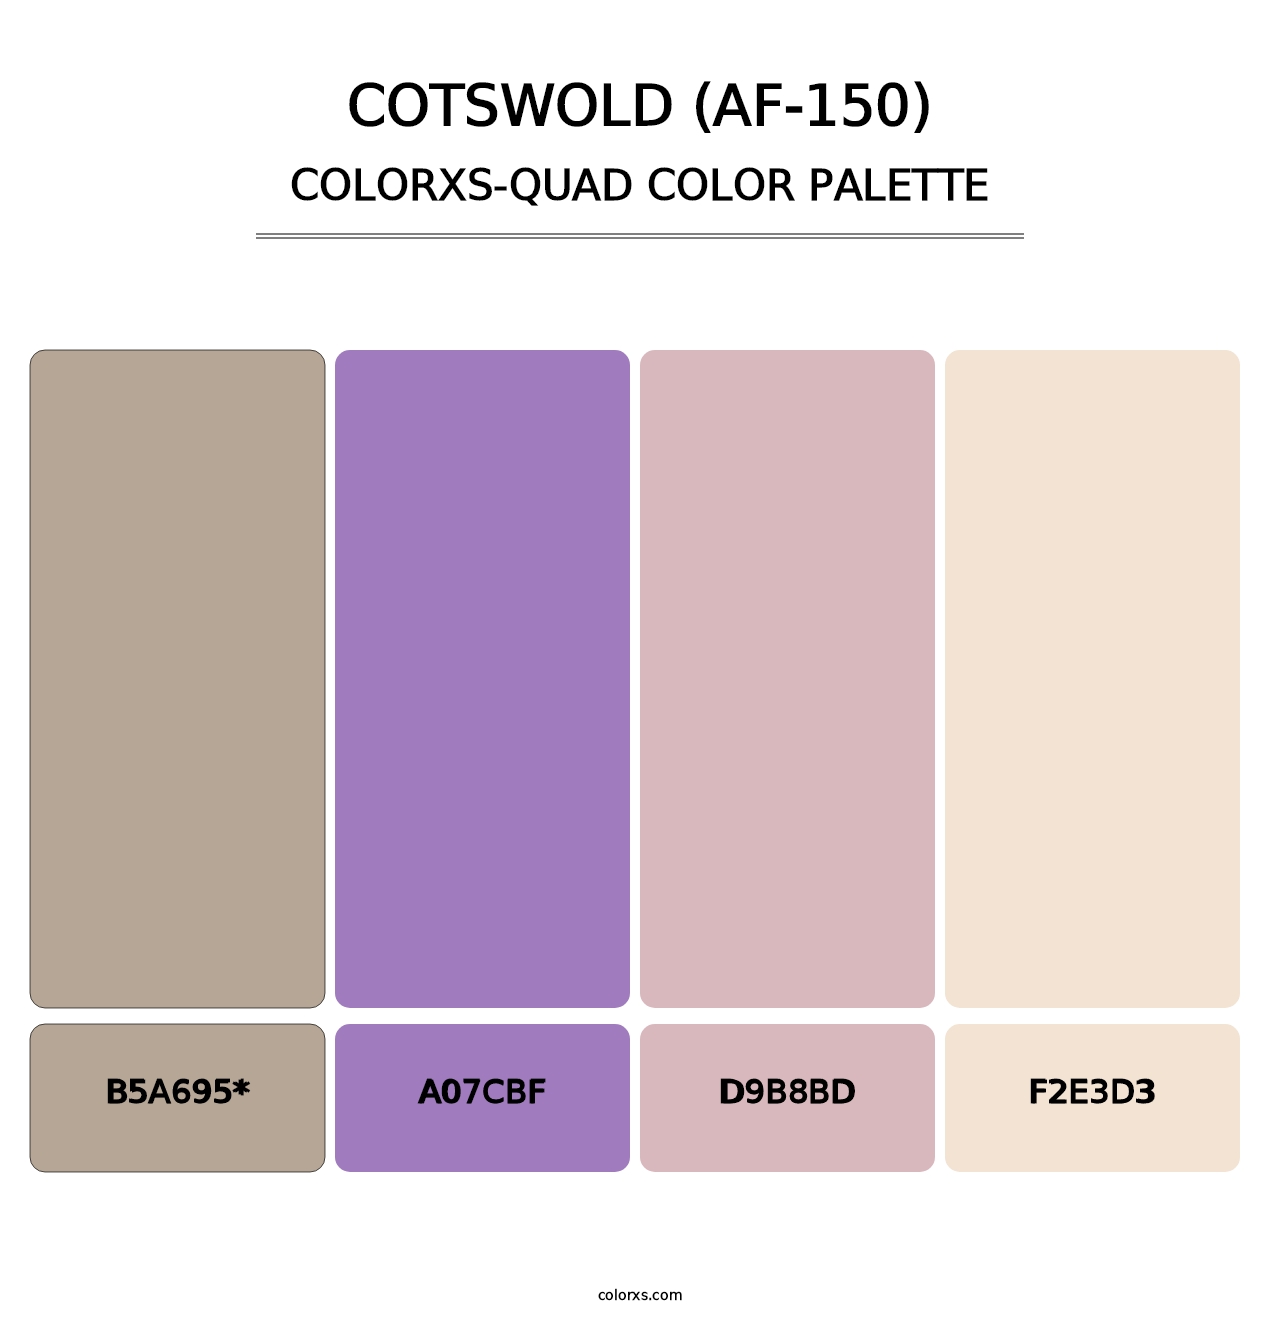 Cotswold (AF-150) - Colorxs Quad Palette